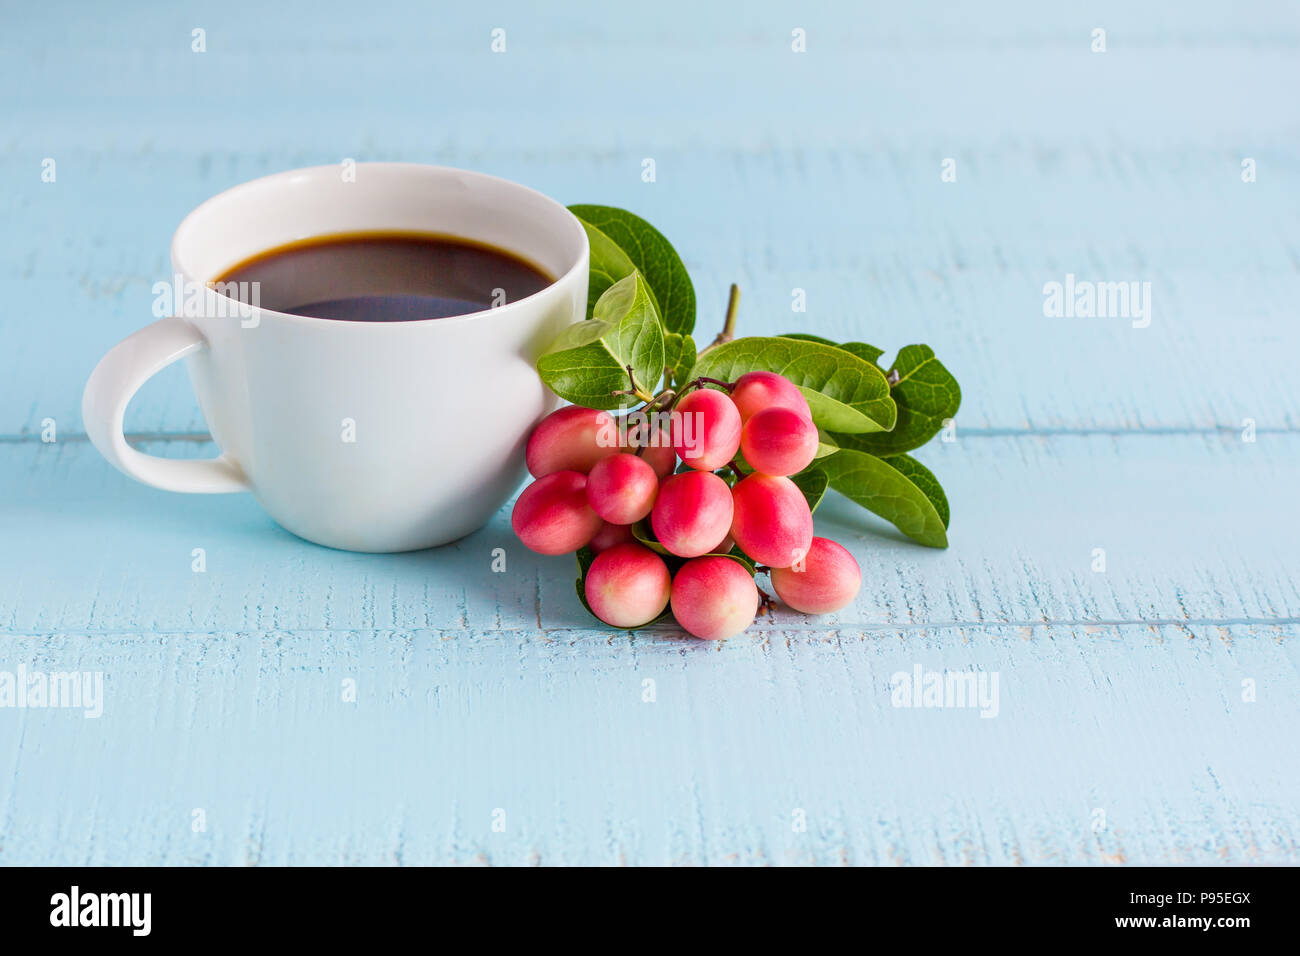 https://c8.alamy.com/compes/p95egx/el-blanco-de-la-taza-de-cafe-con-cafe-negro-y-frutas-en-mesa-de-madera-p95egx.jpg